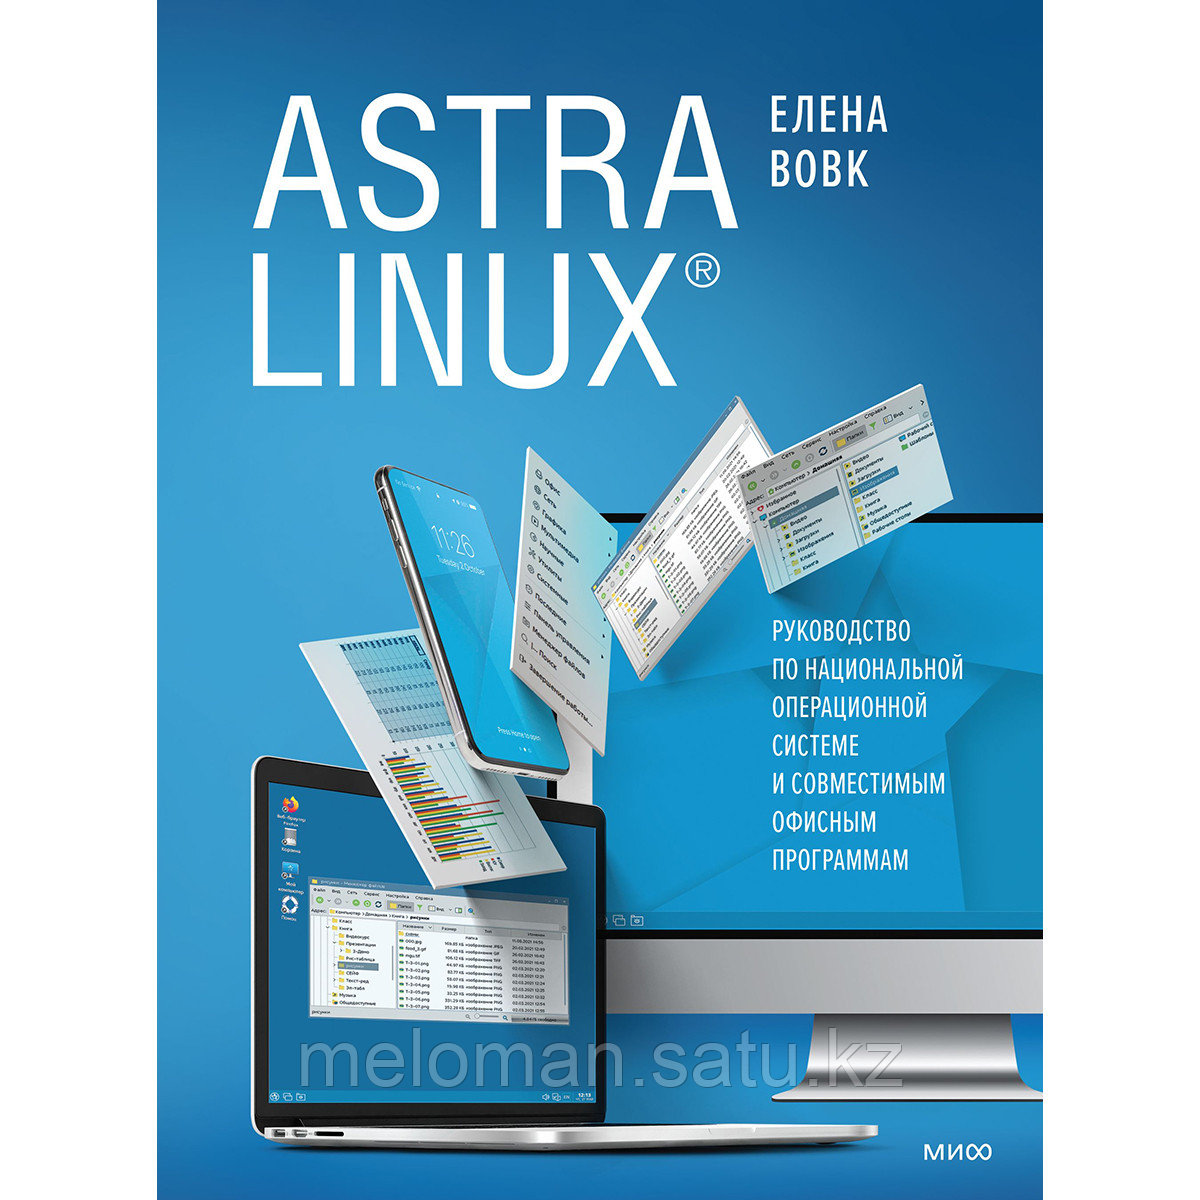 Вовк Е. Т.: Astra Linux. Руководство по национальной операционной системе и совместимым офисным программам